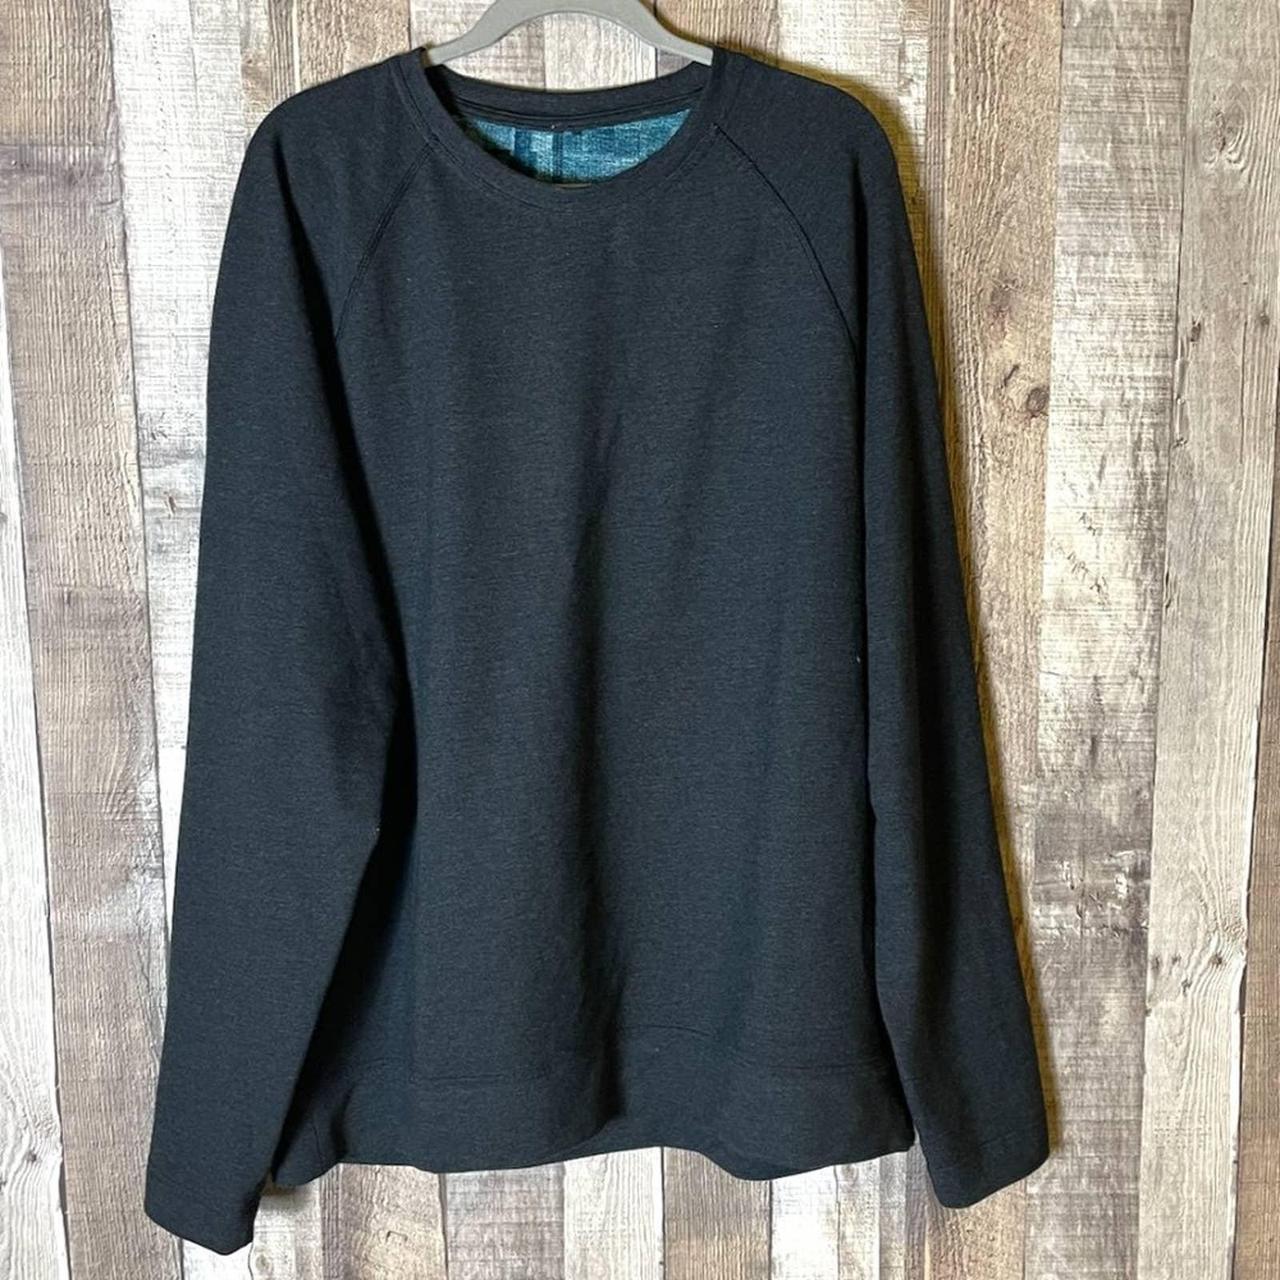 Lululemon Reversible Sweatshirt XL Excellent - Depop